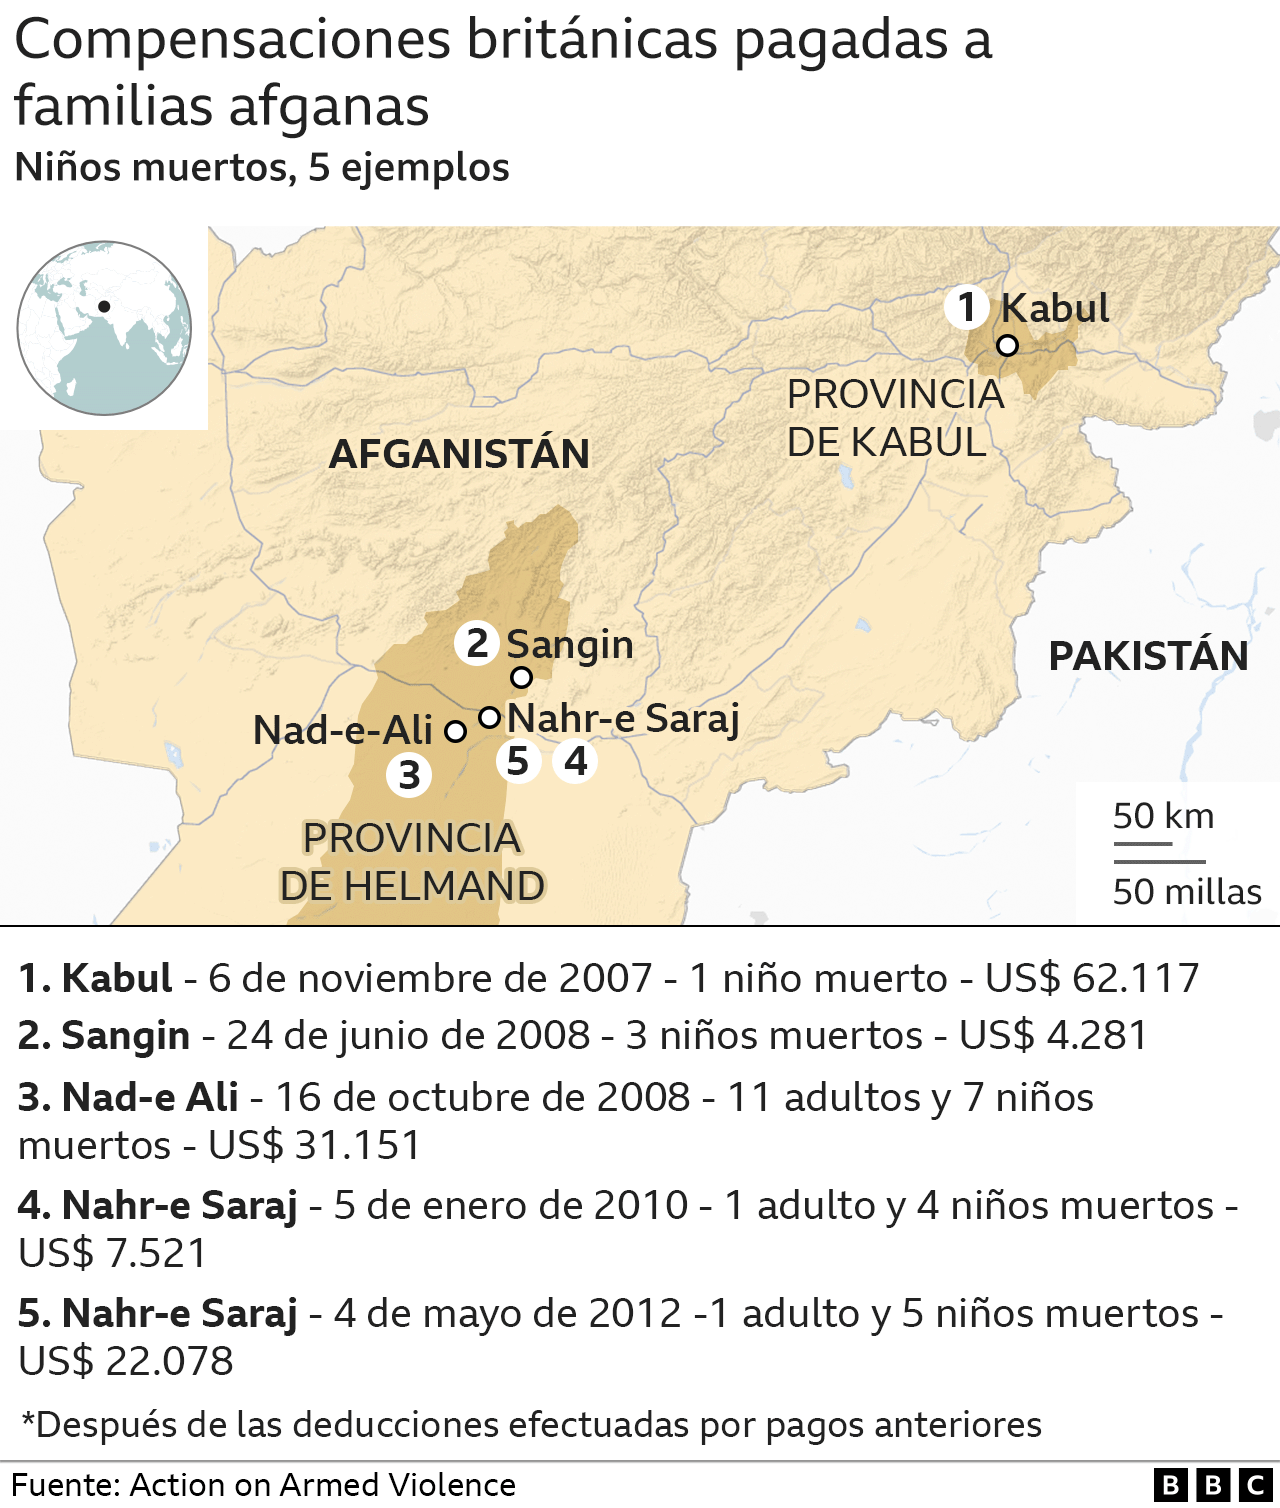 Grafico con datos de niños afganos fallecidos en operaciones militares conducidas por soldados británicos.